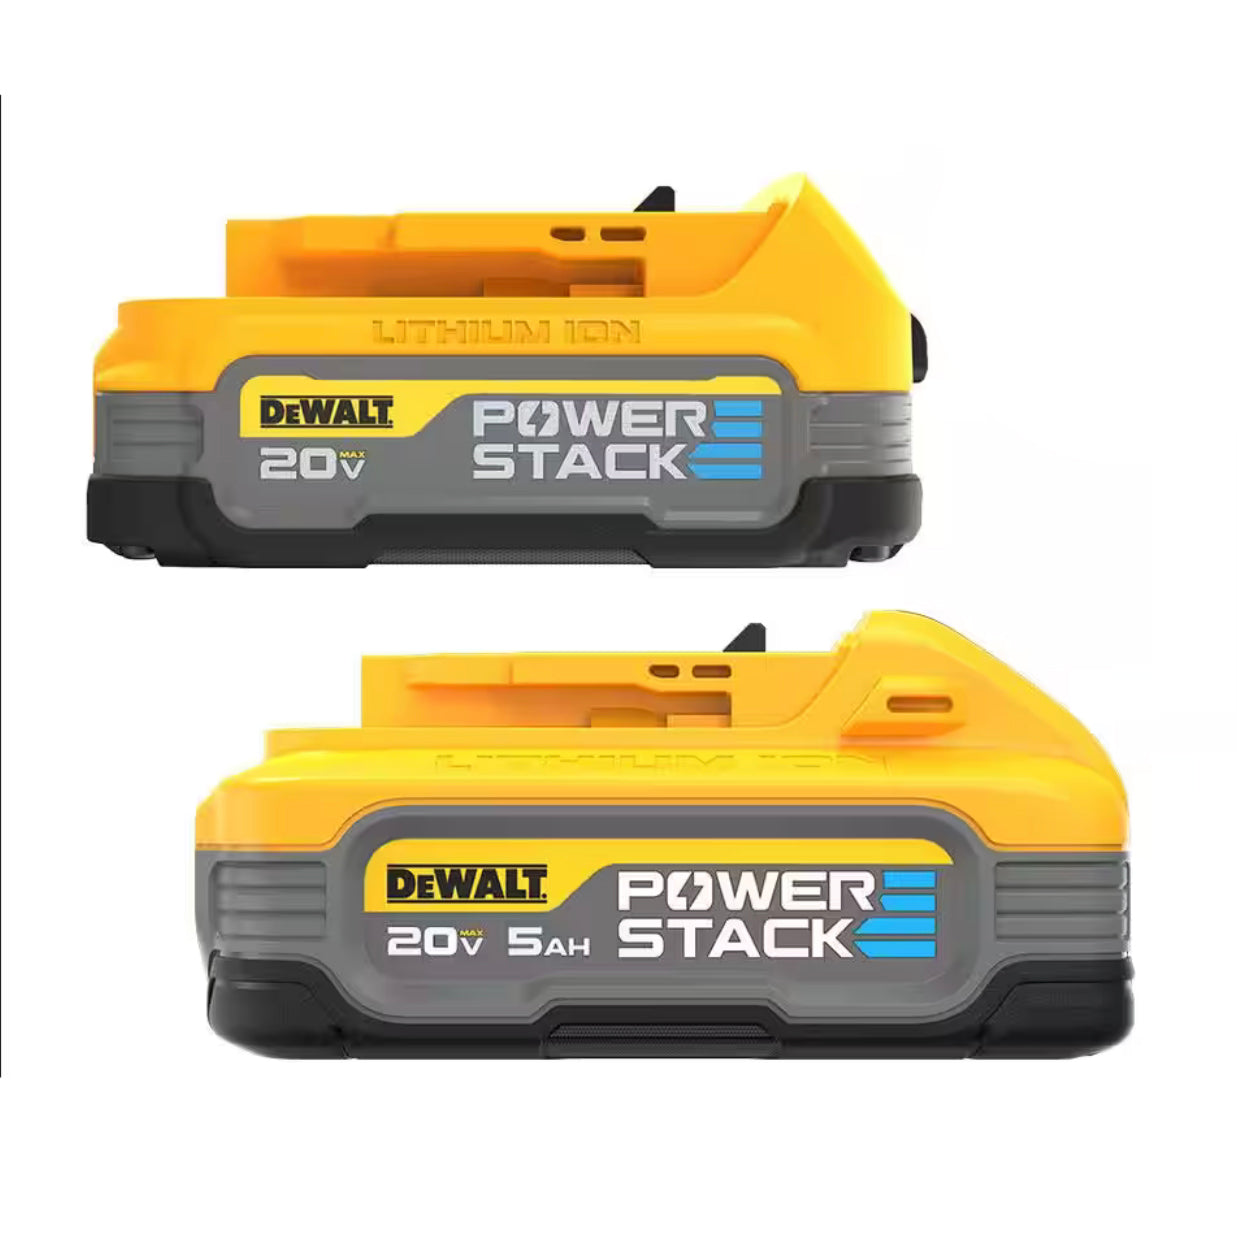 DEWALT POWERSTACK 20V 5.0Ah and 1.7Ah Lithium-Ion Power Tool Battery Packs (2-Pack) (DCBP315-2)